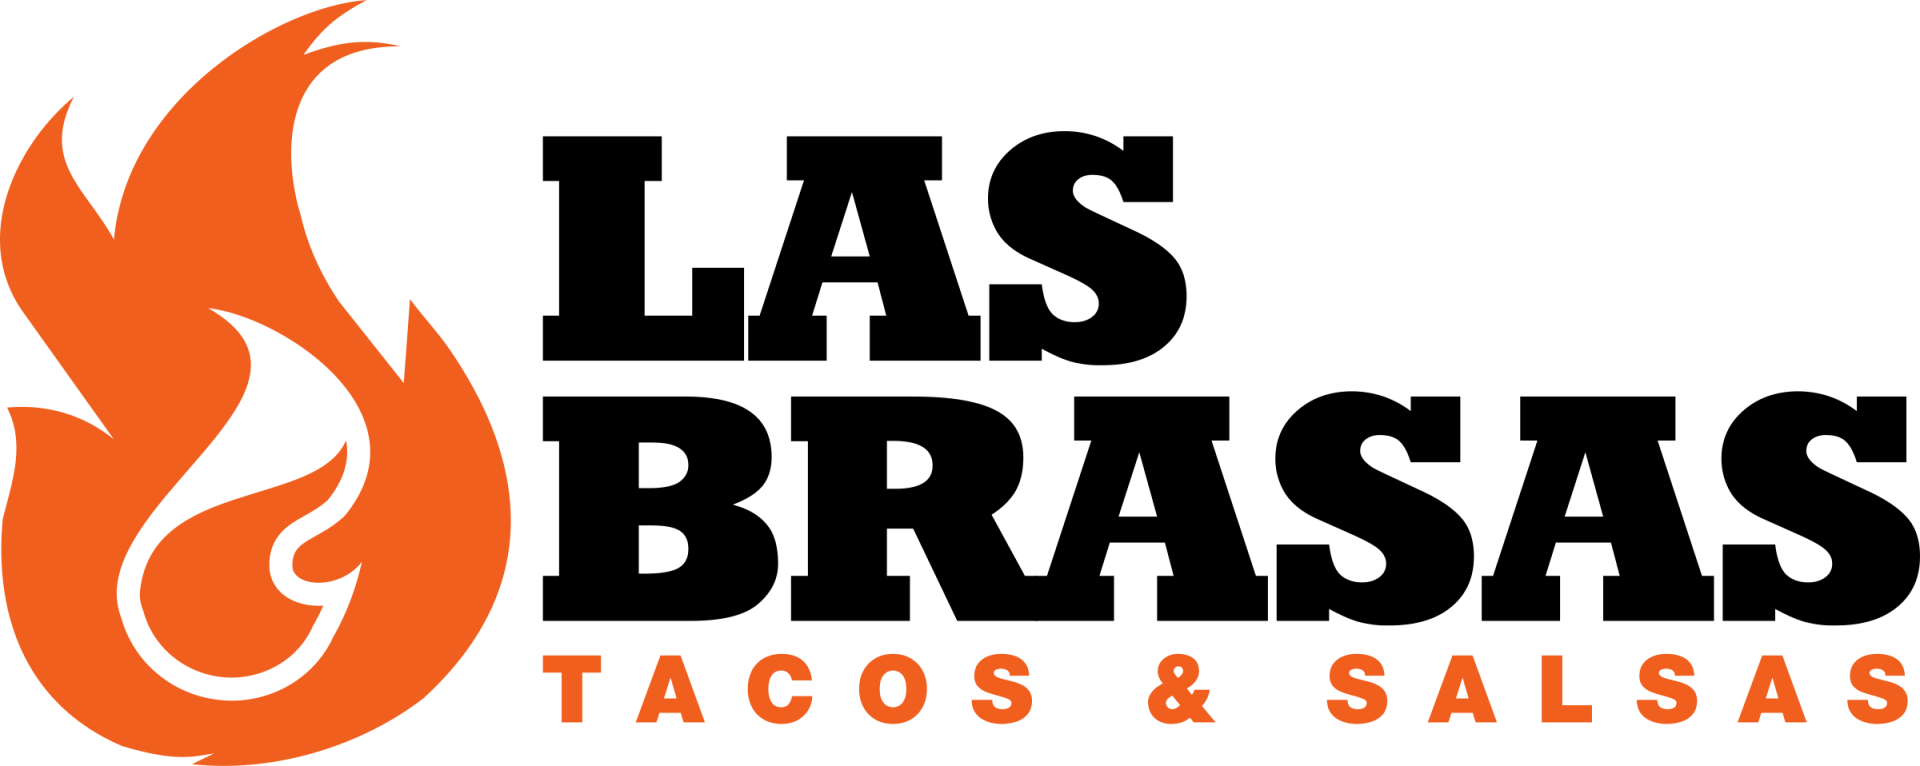 Home, Las Brasas Tacos & Salsas, Woodland, Tacos, Burritos